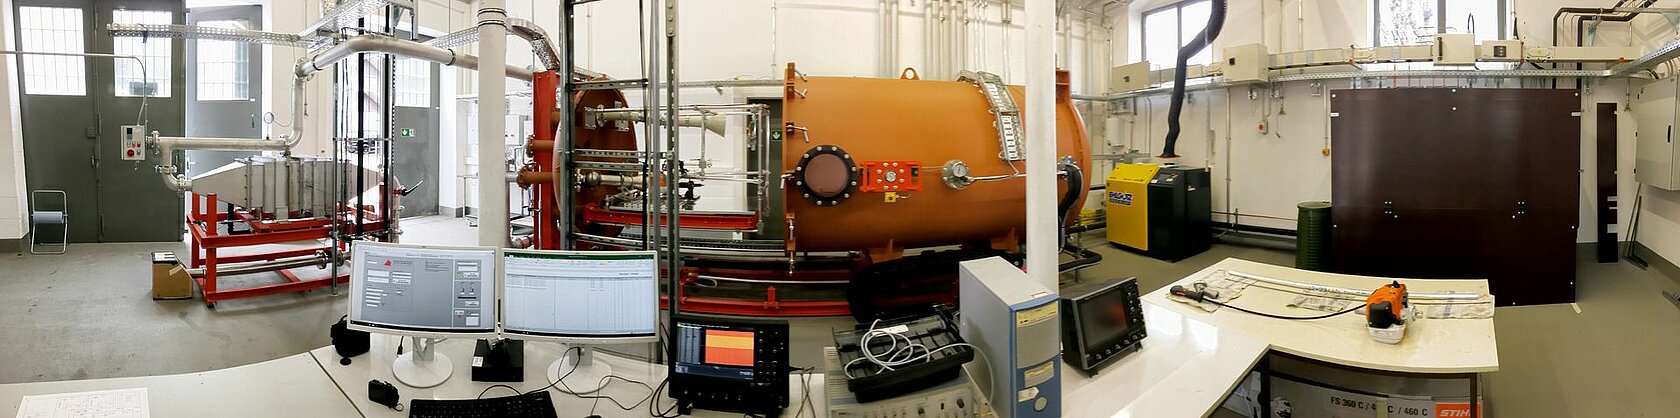 Umweltsimulationskammer für den Einsatz von Kleinmotoren und Biokraftstoffen